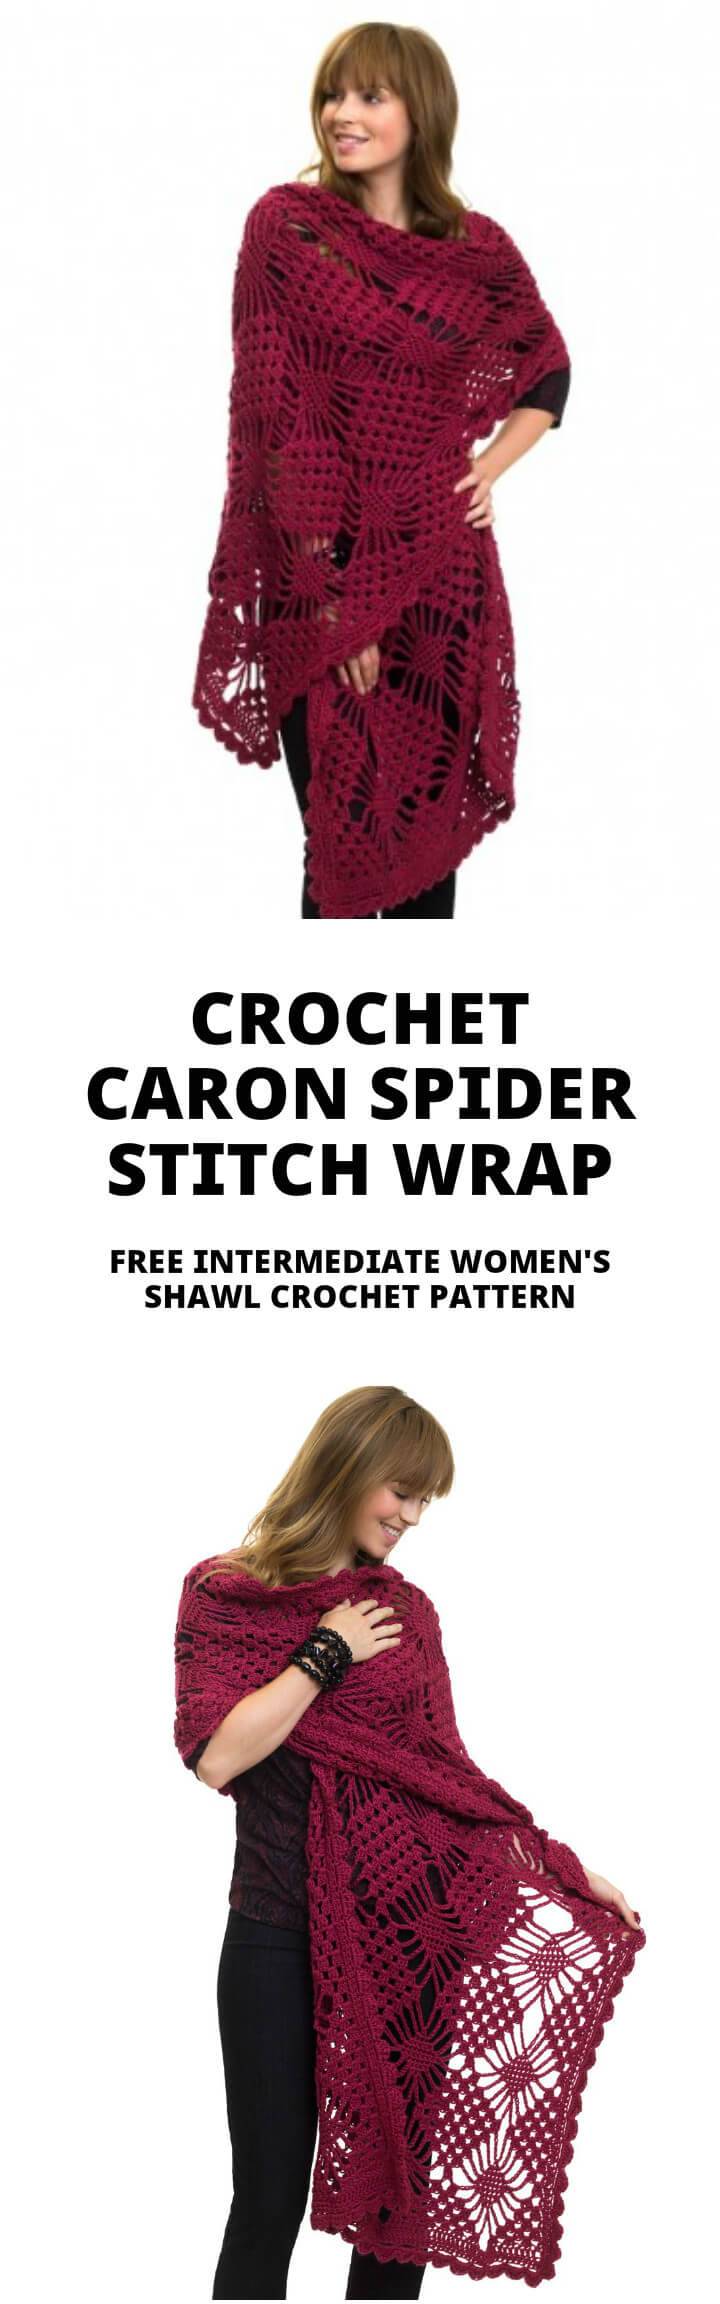 crochet spider stitch shawl or wrap